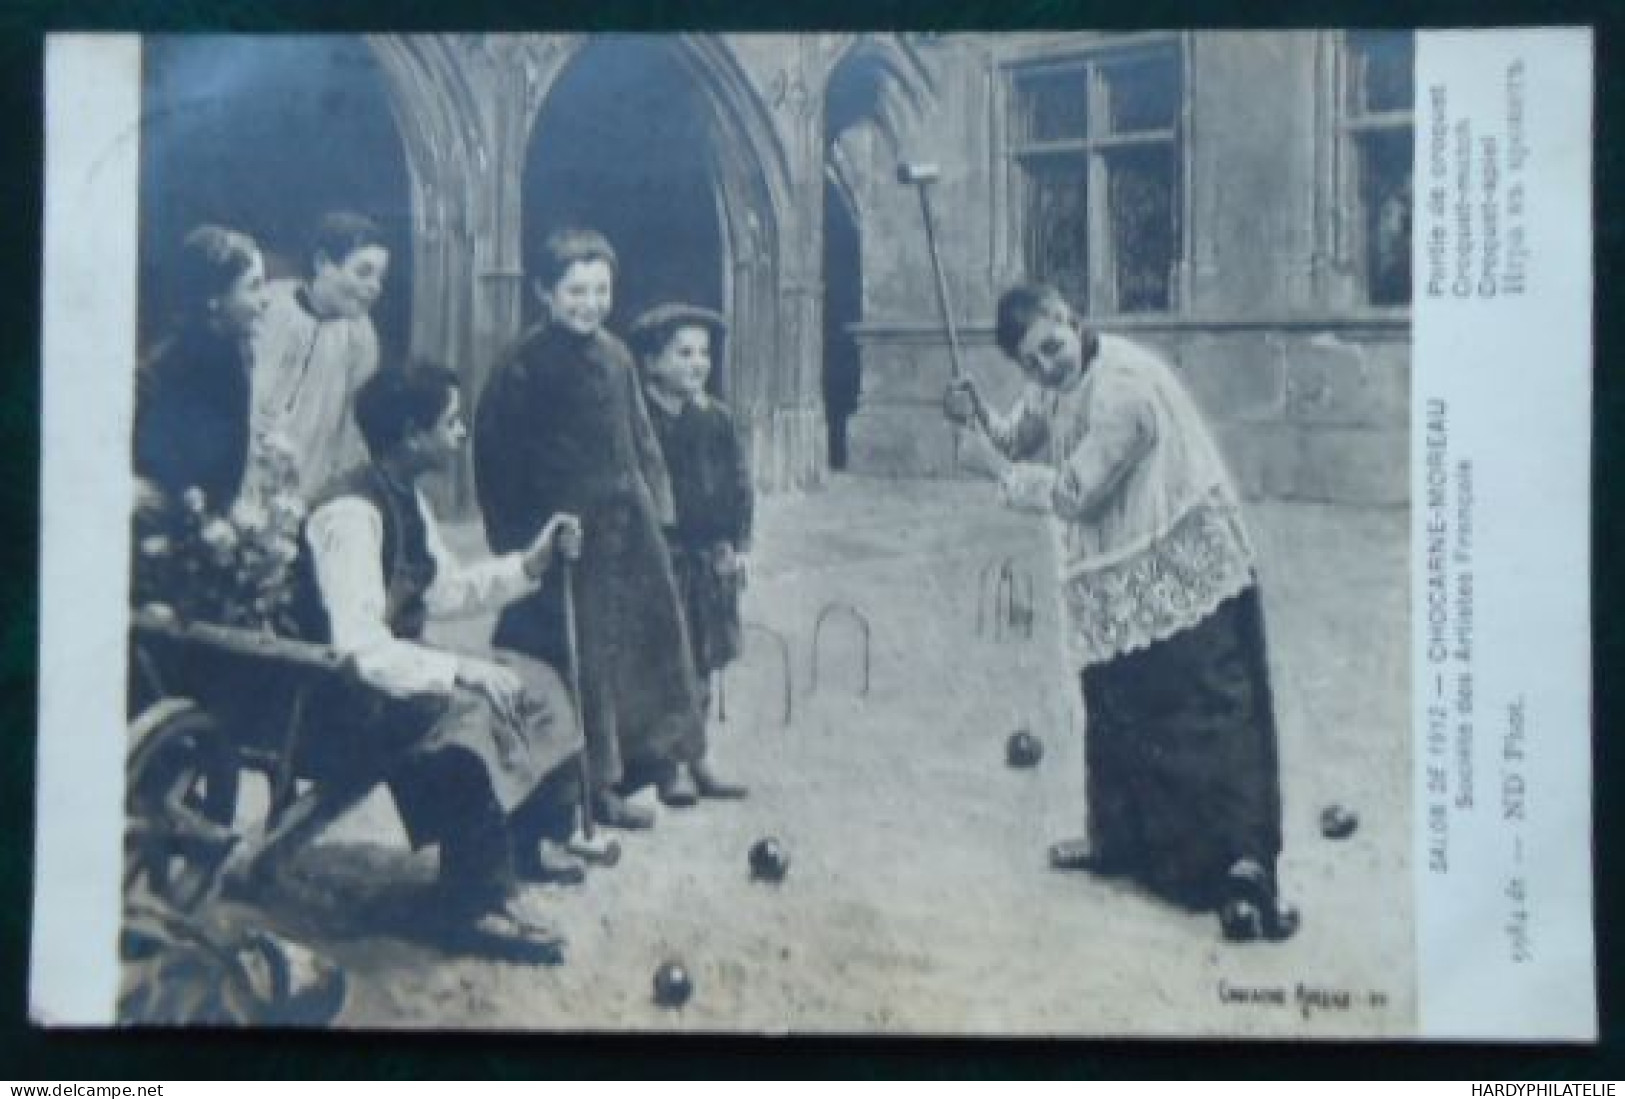 CHACARNE MOREAU 1912 LIEGE - Jeux Et Jouets